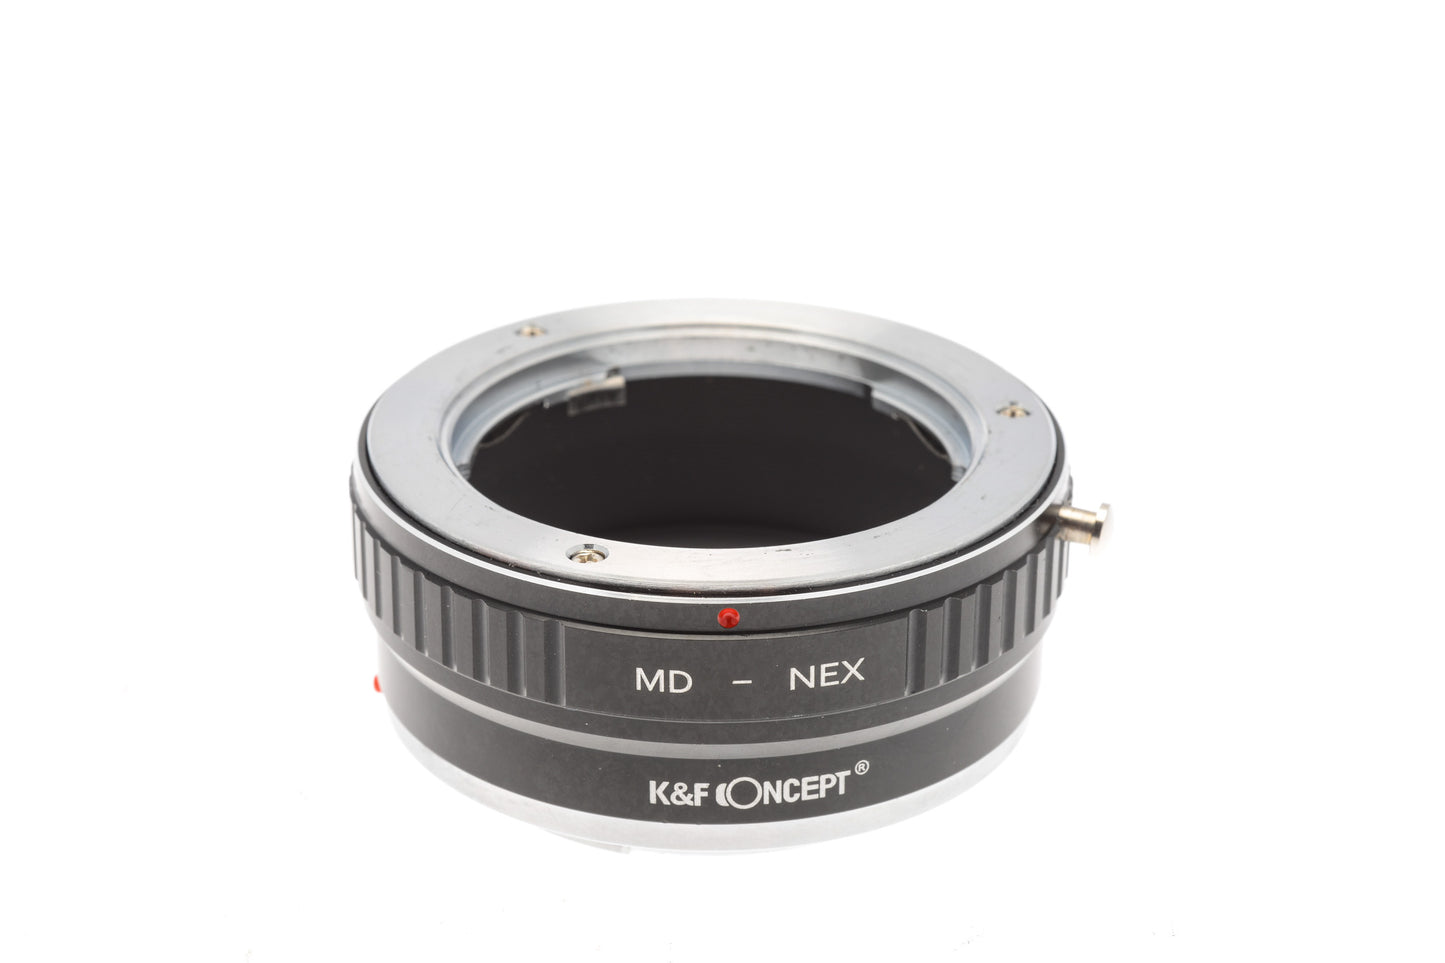 K&F Concept Minolta MD - Sony E (MD - NEX) Adapter - Lens Adapter